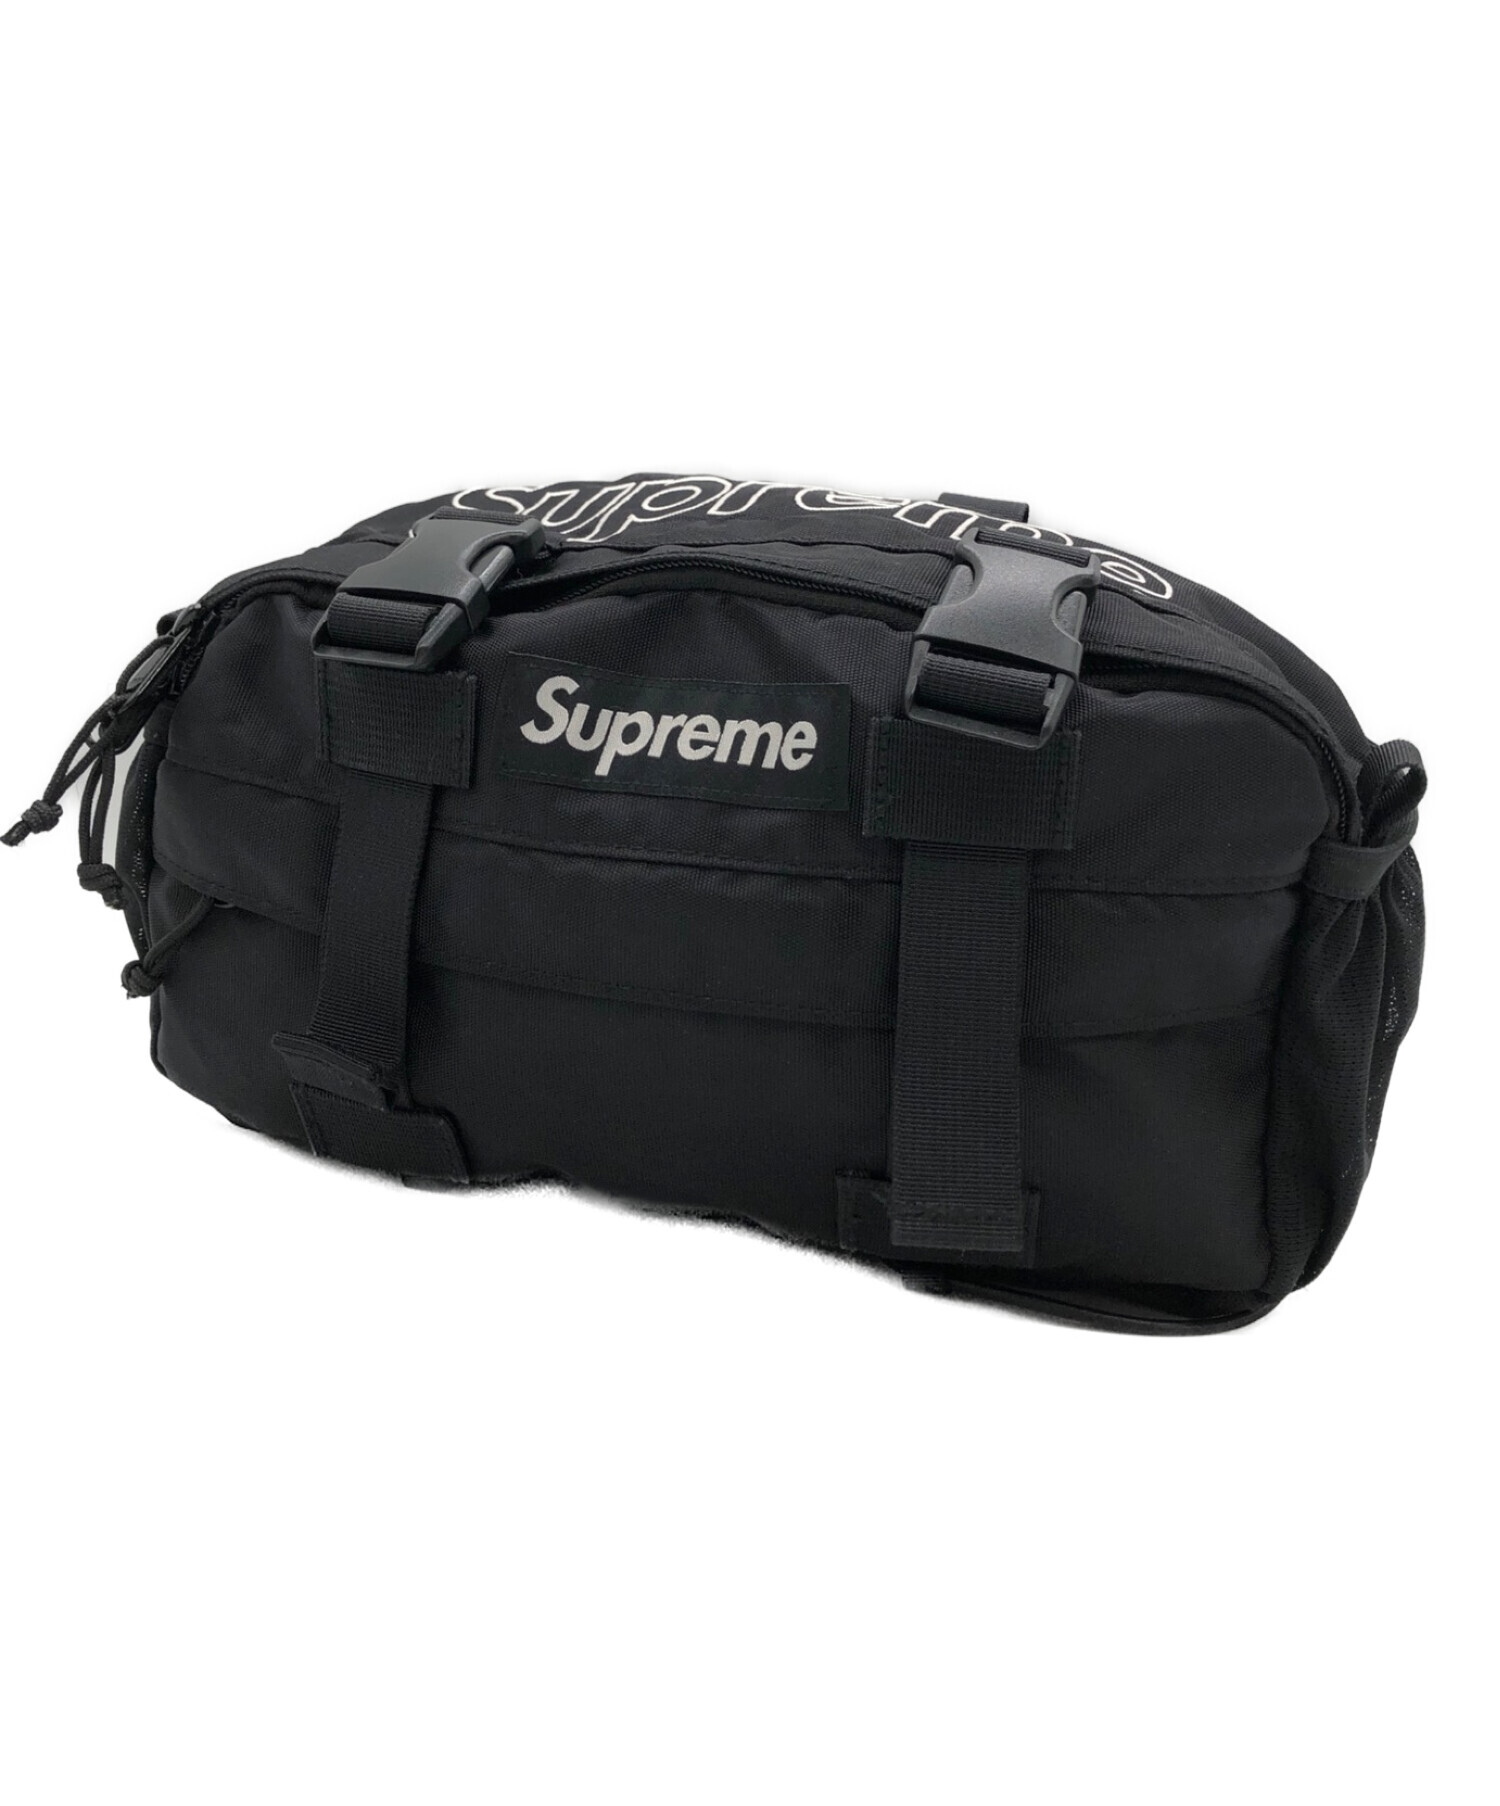 Supreme waist bag BLACK ウエストバッグ ブラック